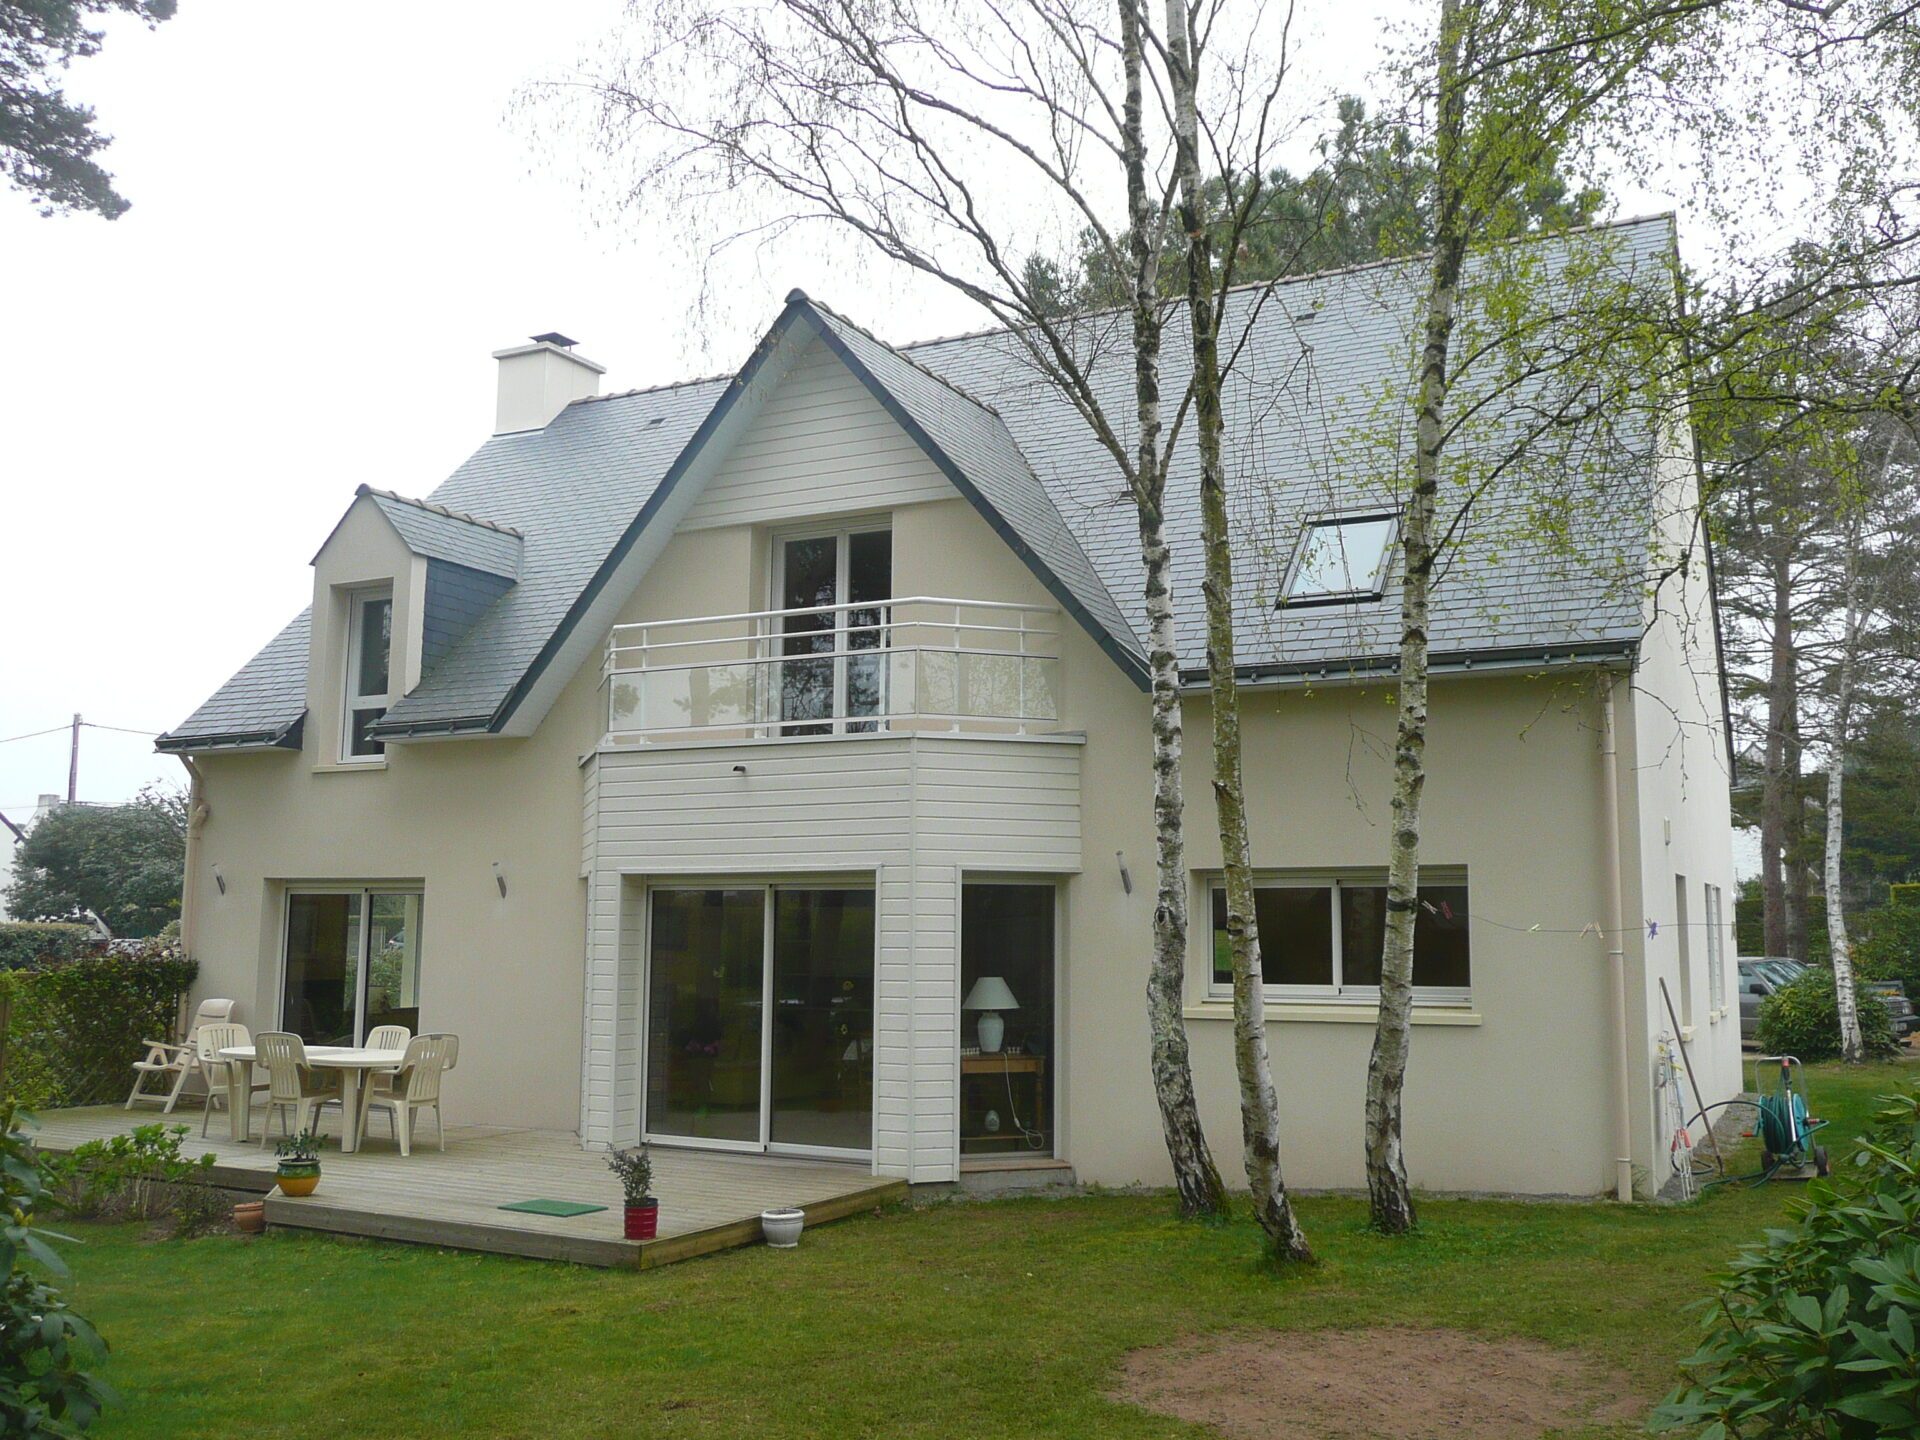 Maison avec bardage aluminium et grandes baies vitrées ainsi qu'une toiture en ardoise